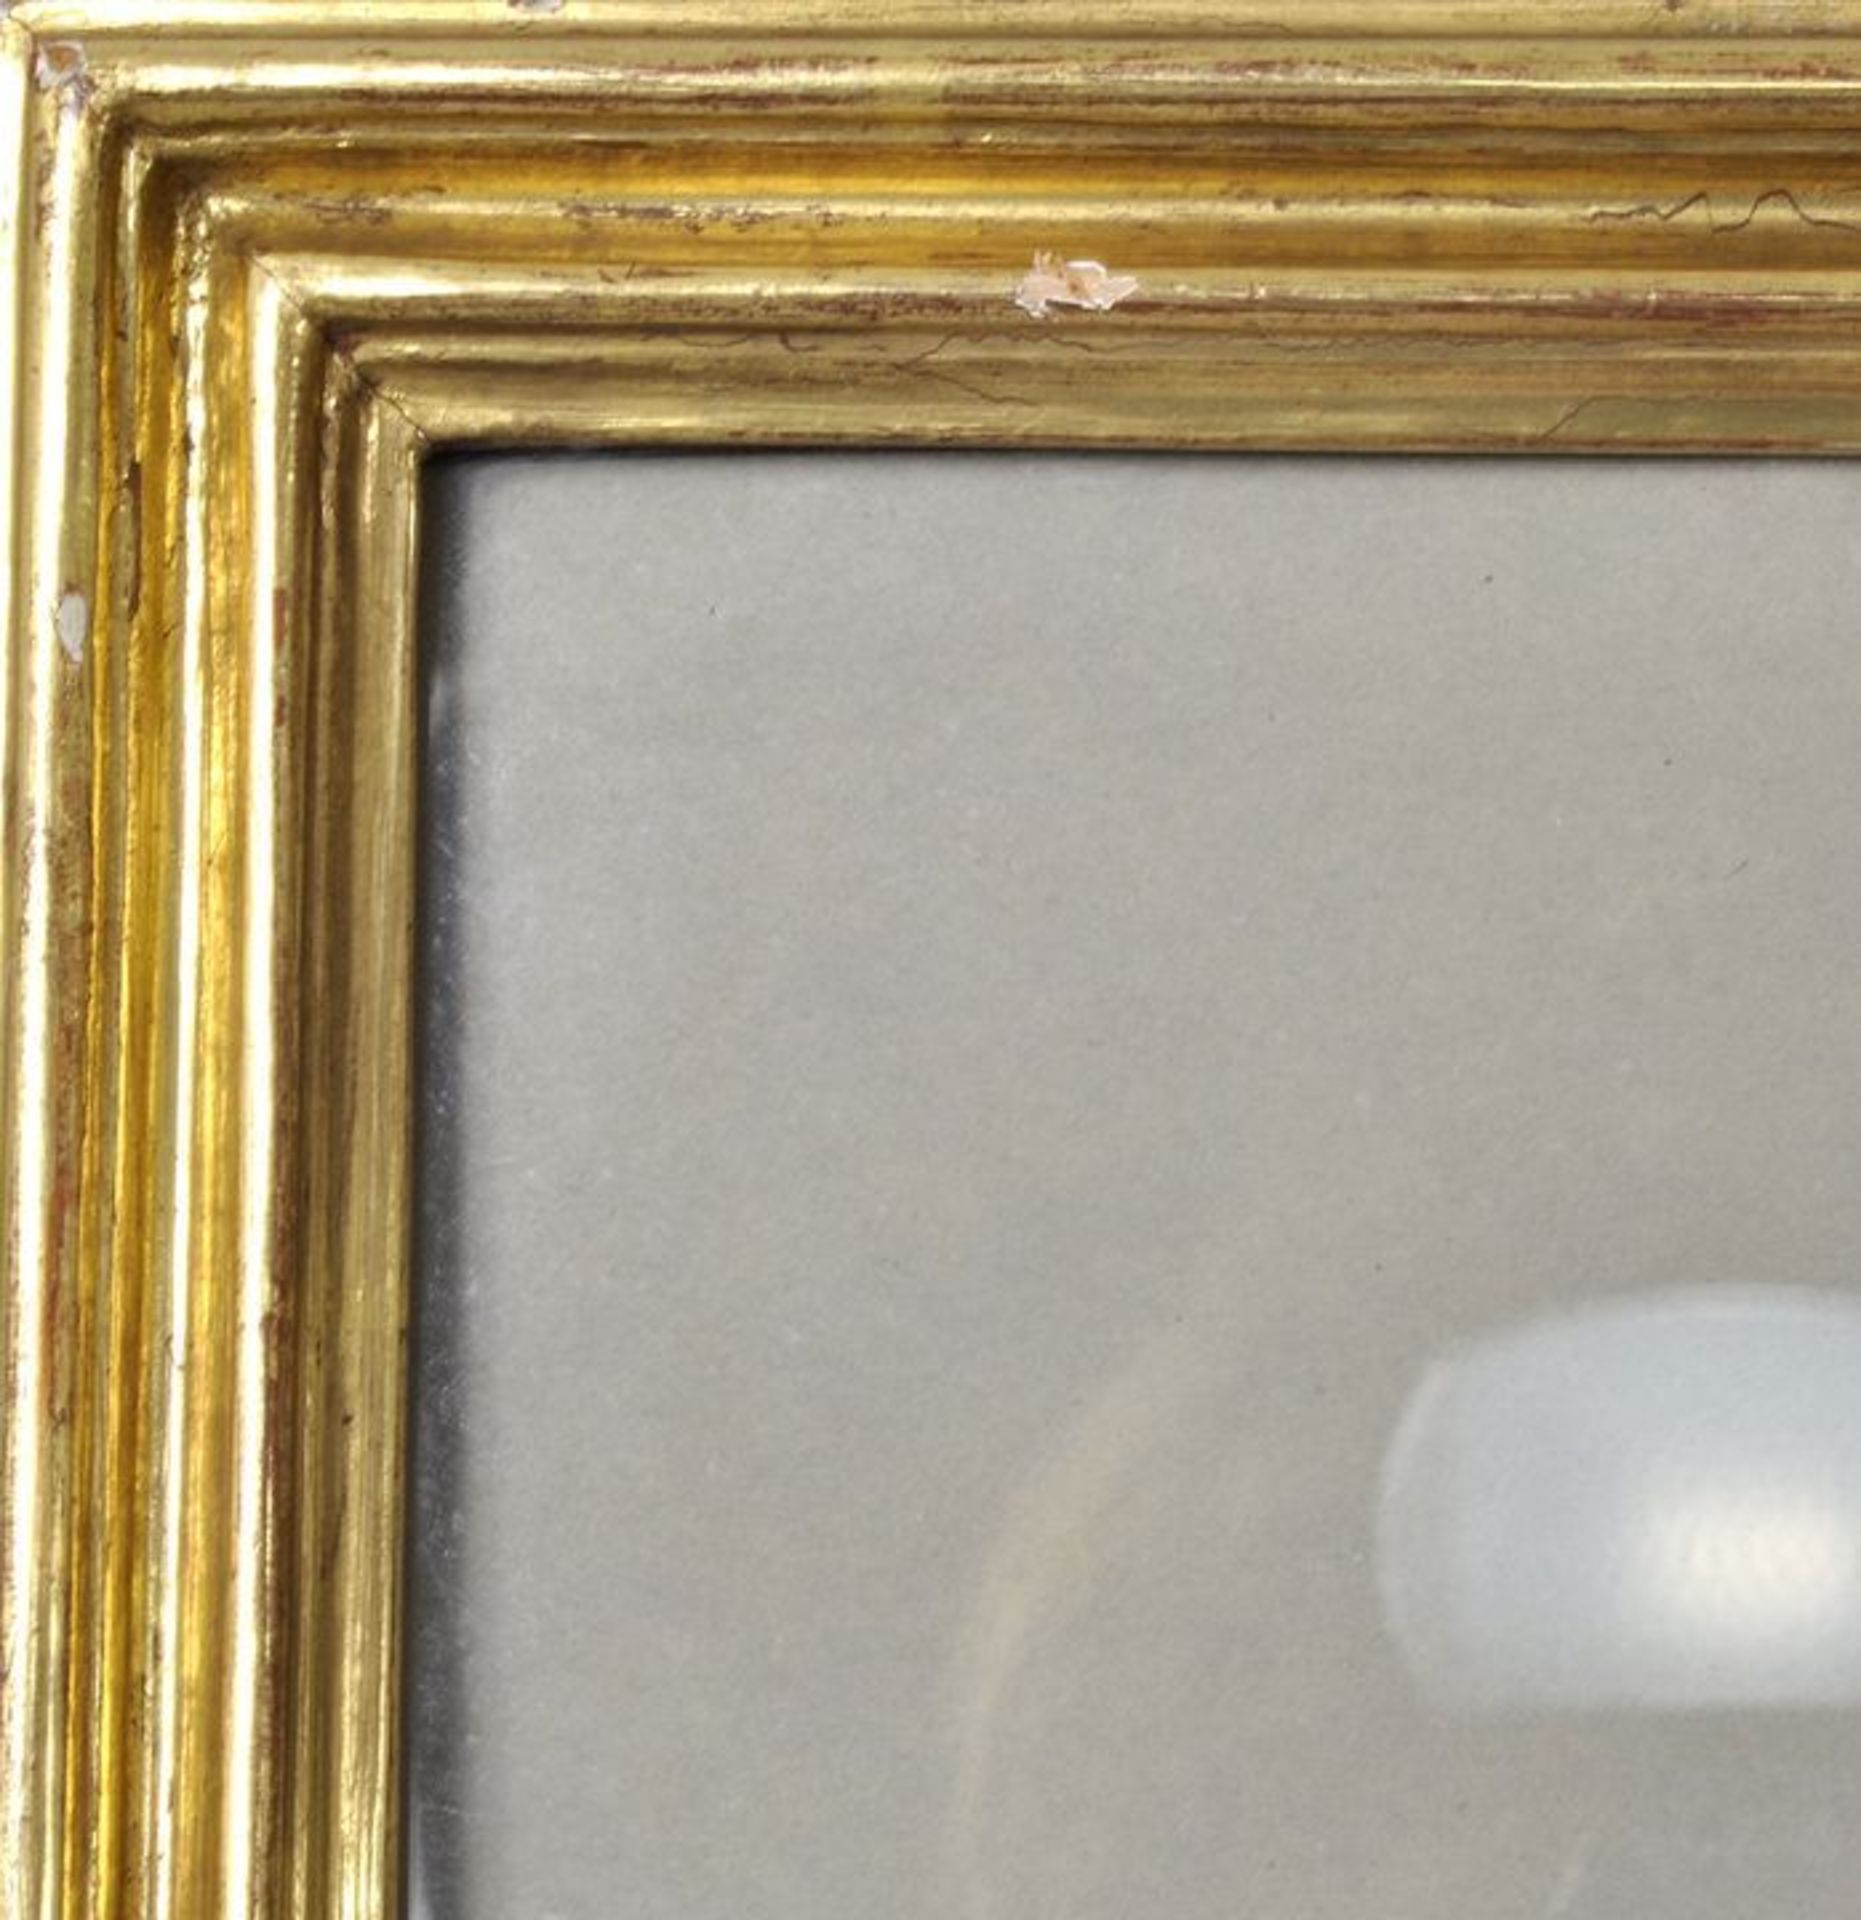 Rahmen, Berliner Leiste, 20. Jh. 25 mm Holz-Profilleiste, vergoldet, verglast. 51,5 x 61,5 cm (